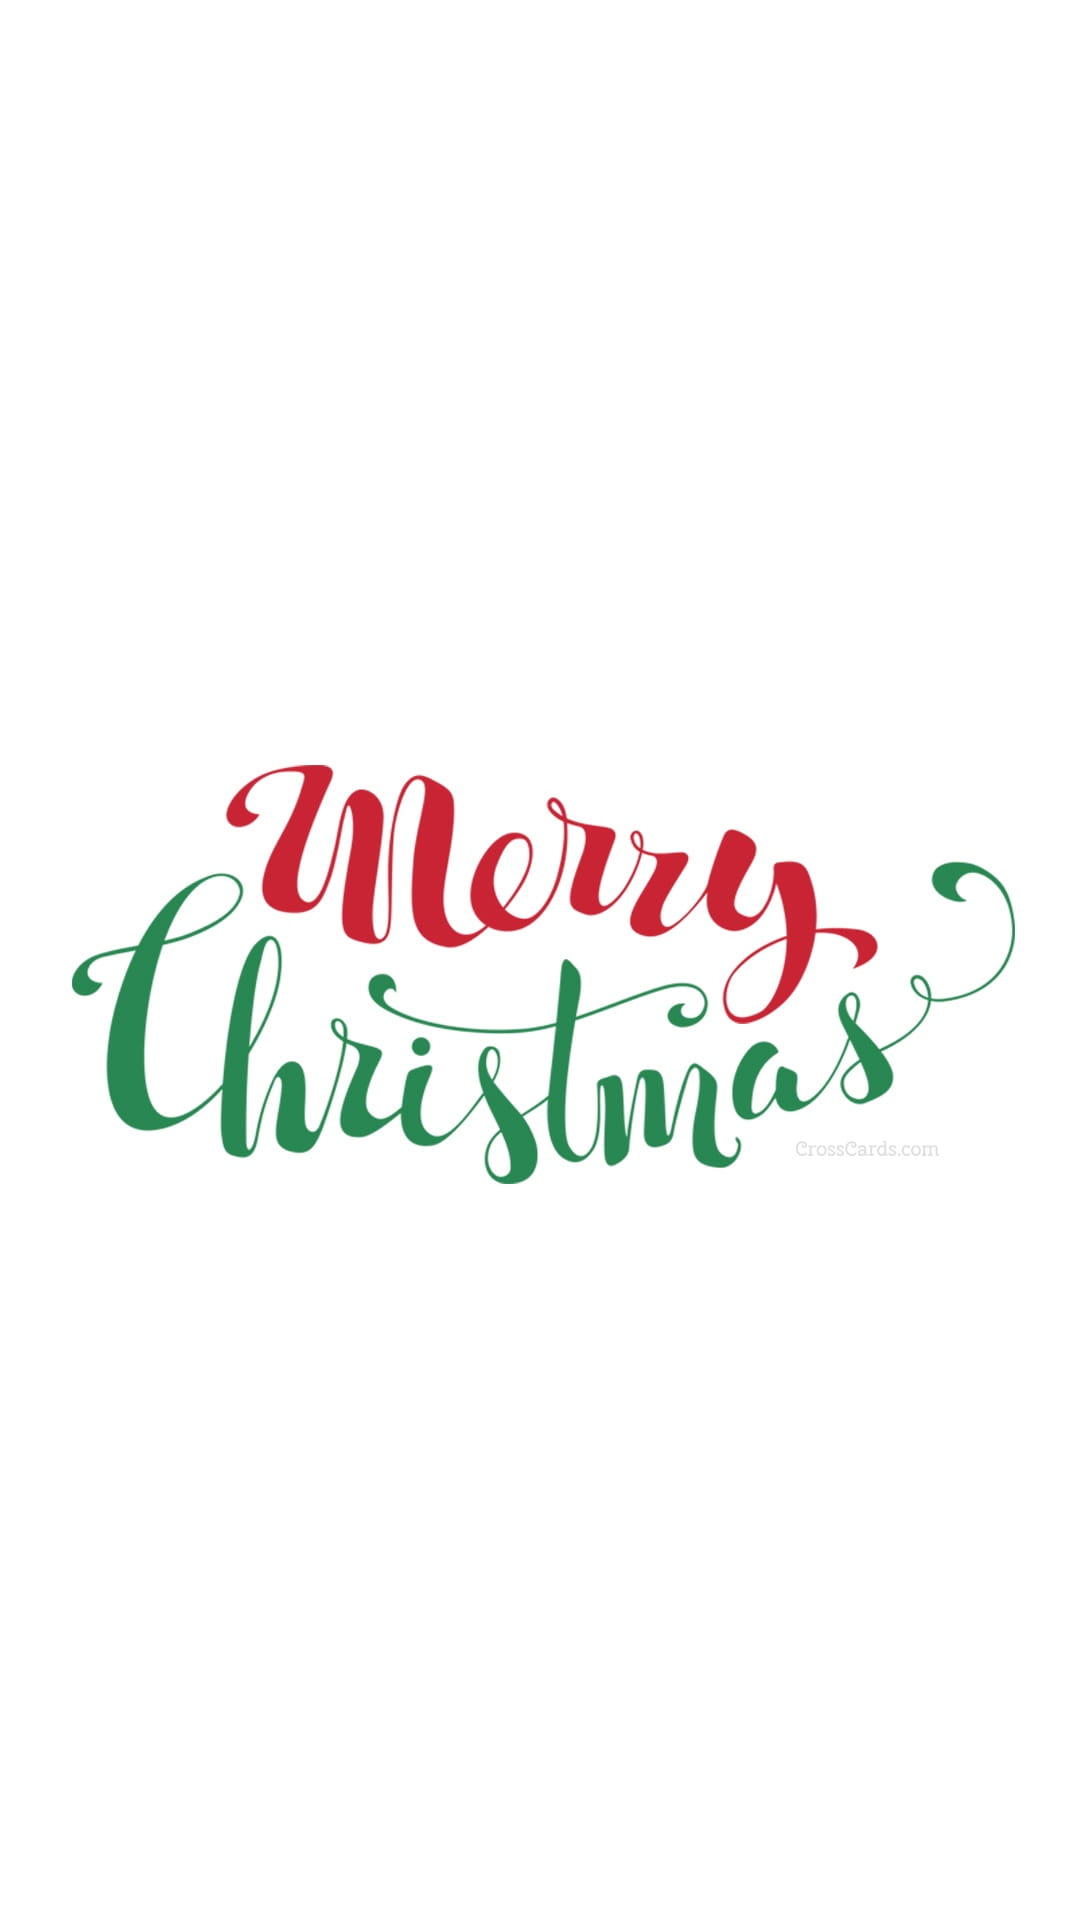 December 2015 - Merry Christmas Handwritten Desktop Calendar- Free ...